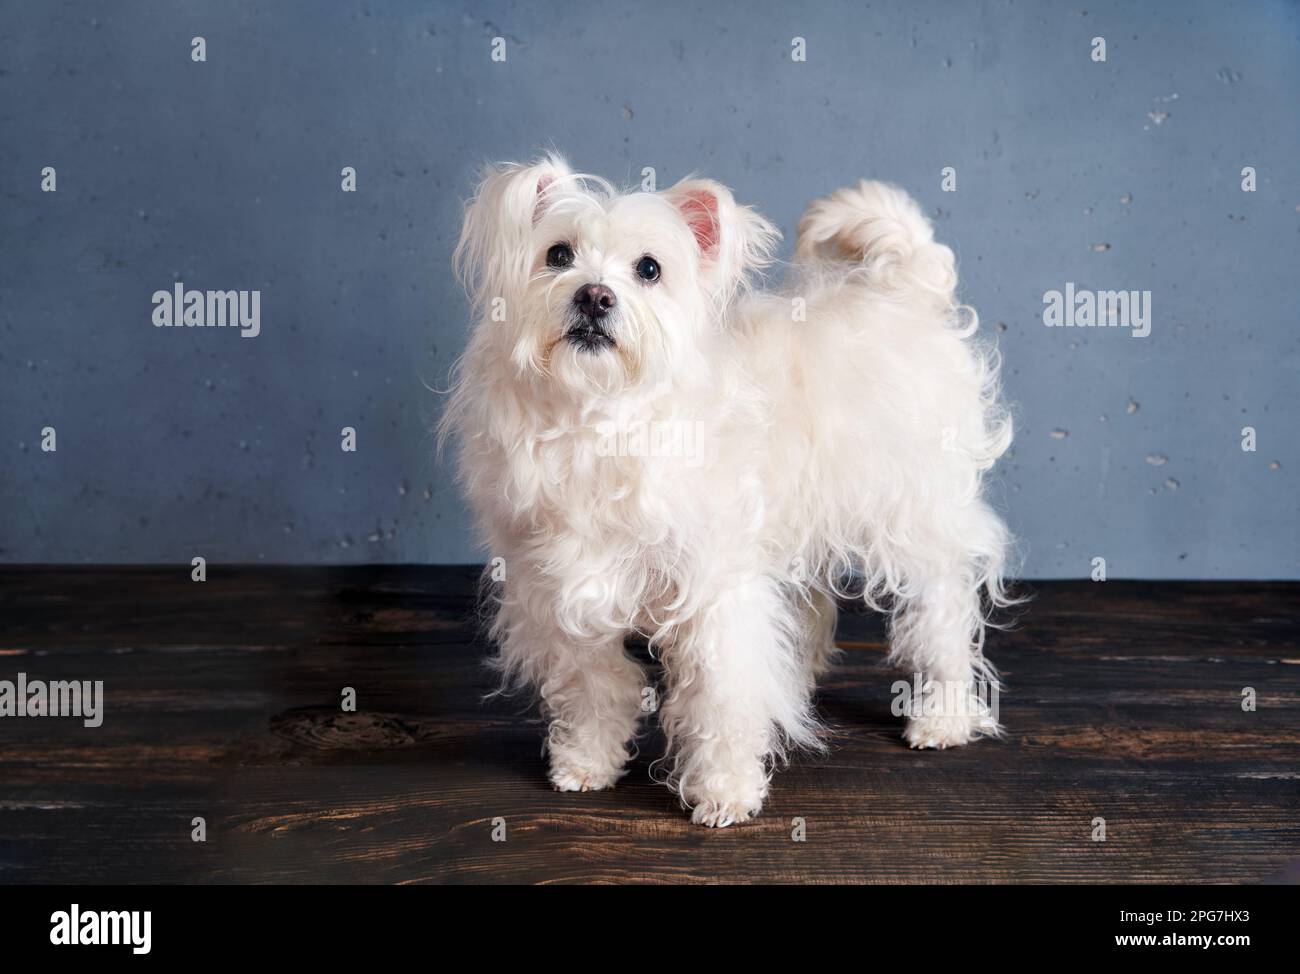 Adorabile razza di cane bianco giocoso in posa in studio. Animali, concetto di cura degli animali domestici Foto Stock